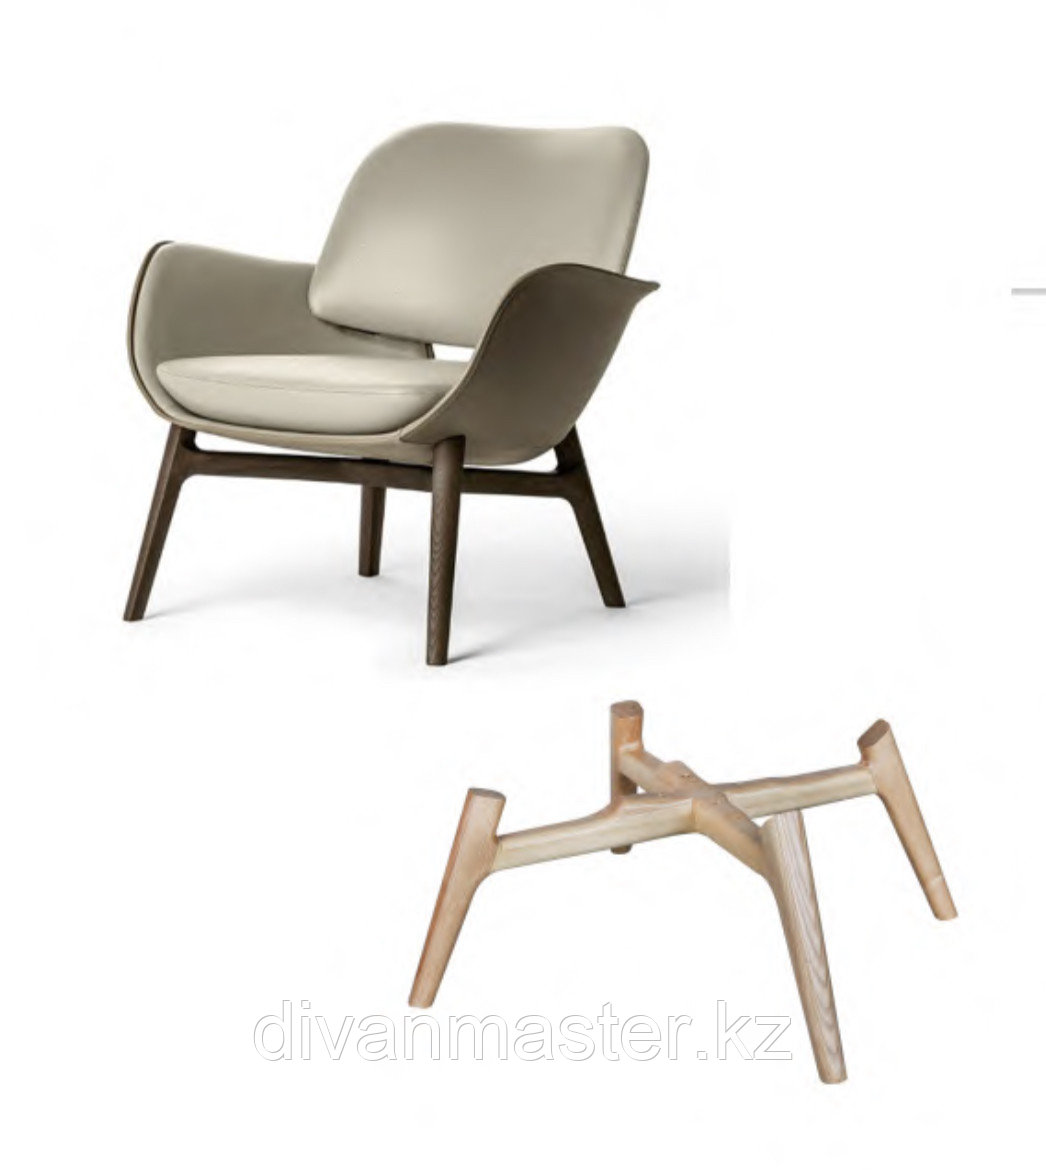 Основание кресла, дерево, модель 108